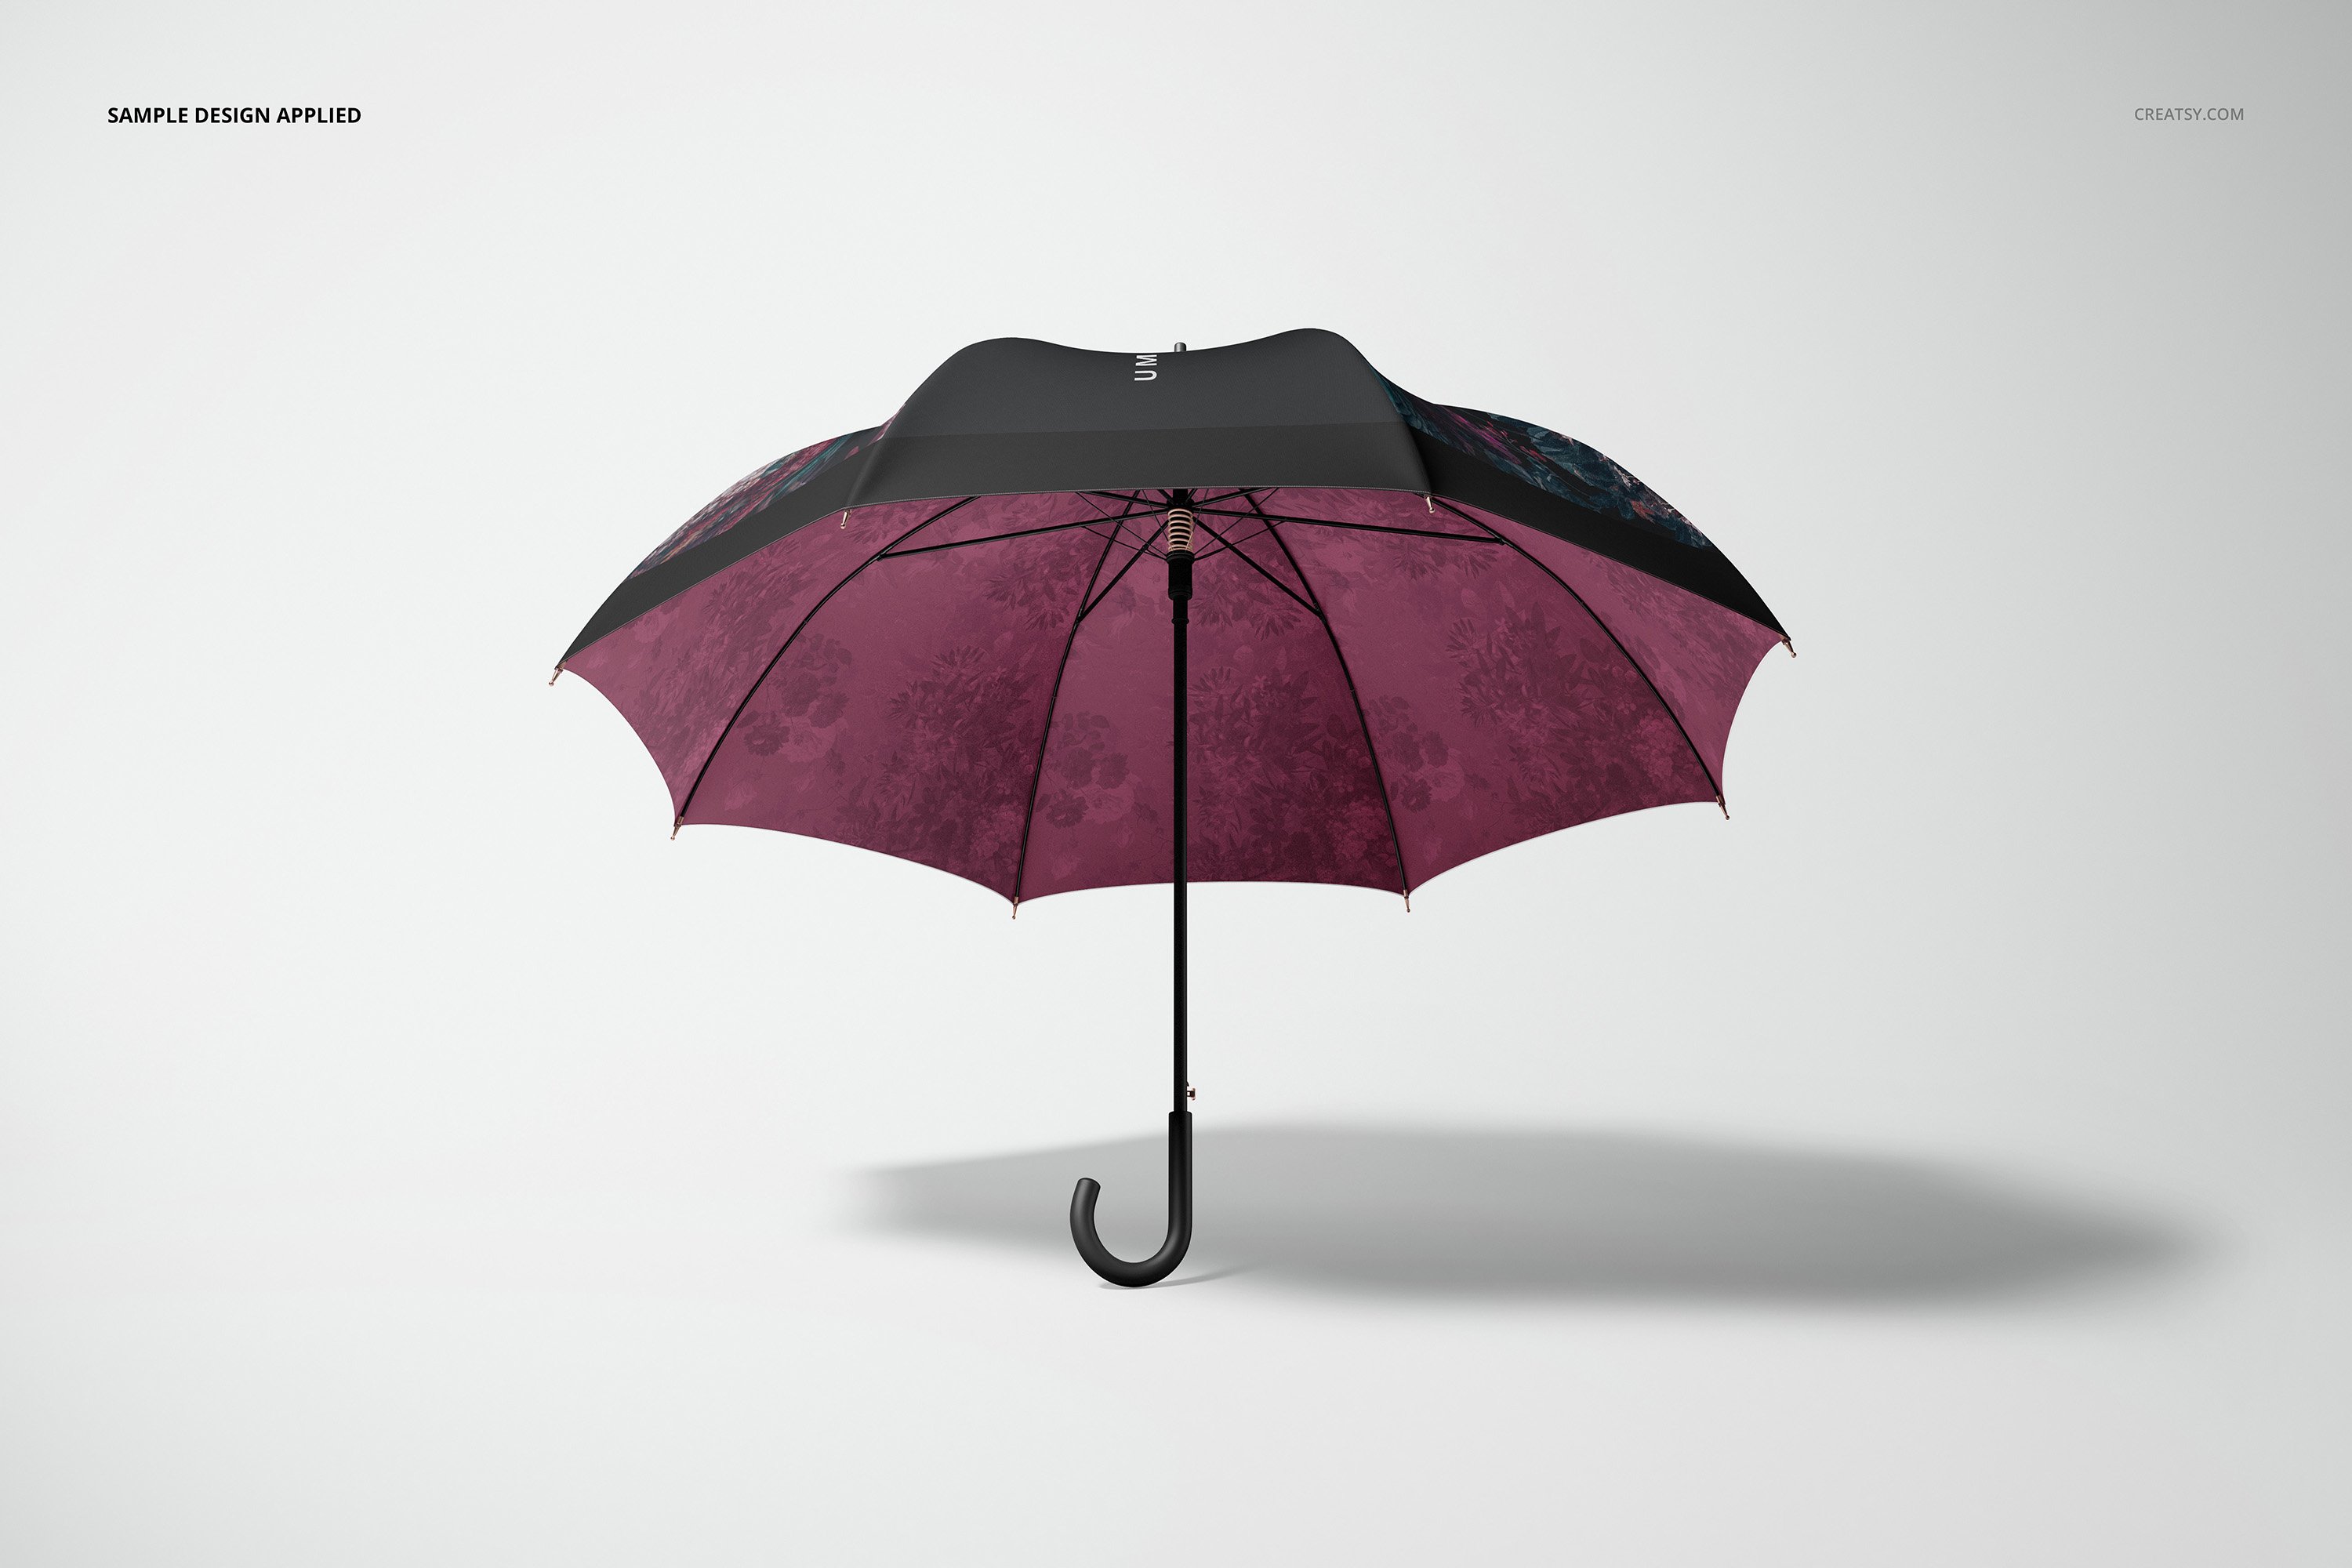 1034 14个时尚太阳伞雨伞品牌Logo设计贴图样机模板合集 Umbrella Mockup Set